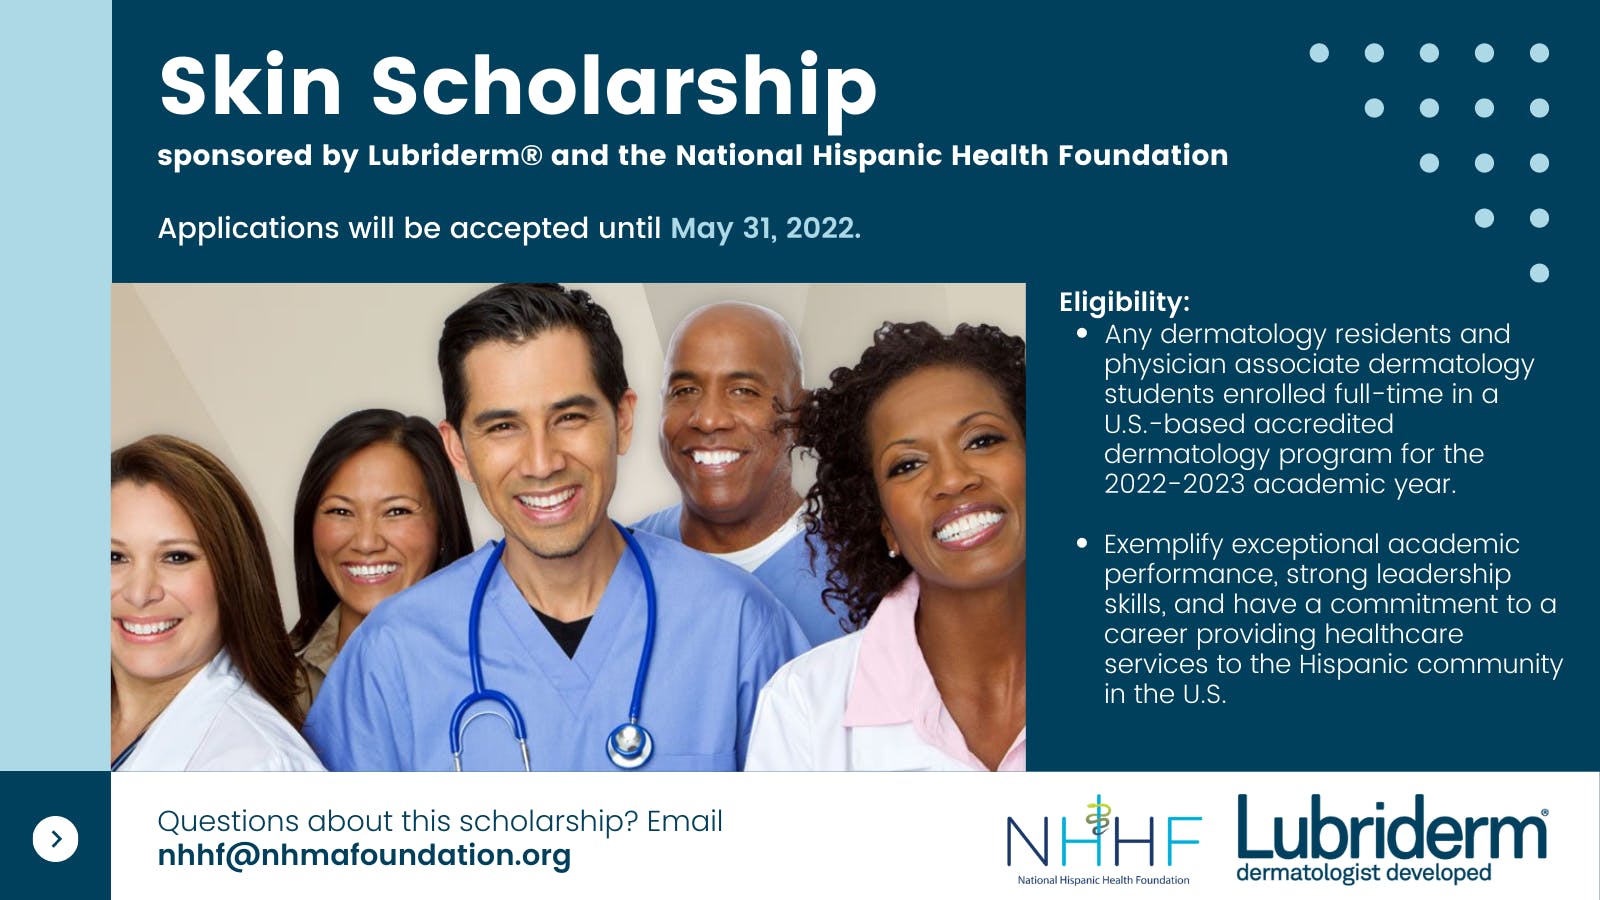 Lubriderm以美国拉美裔健康基金会的形象推出皮肤奖学金